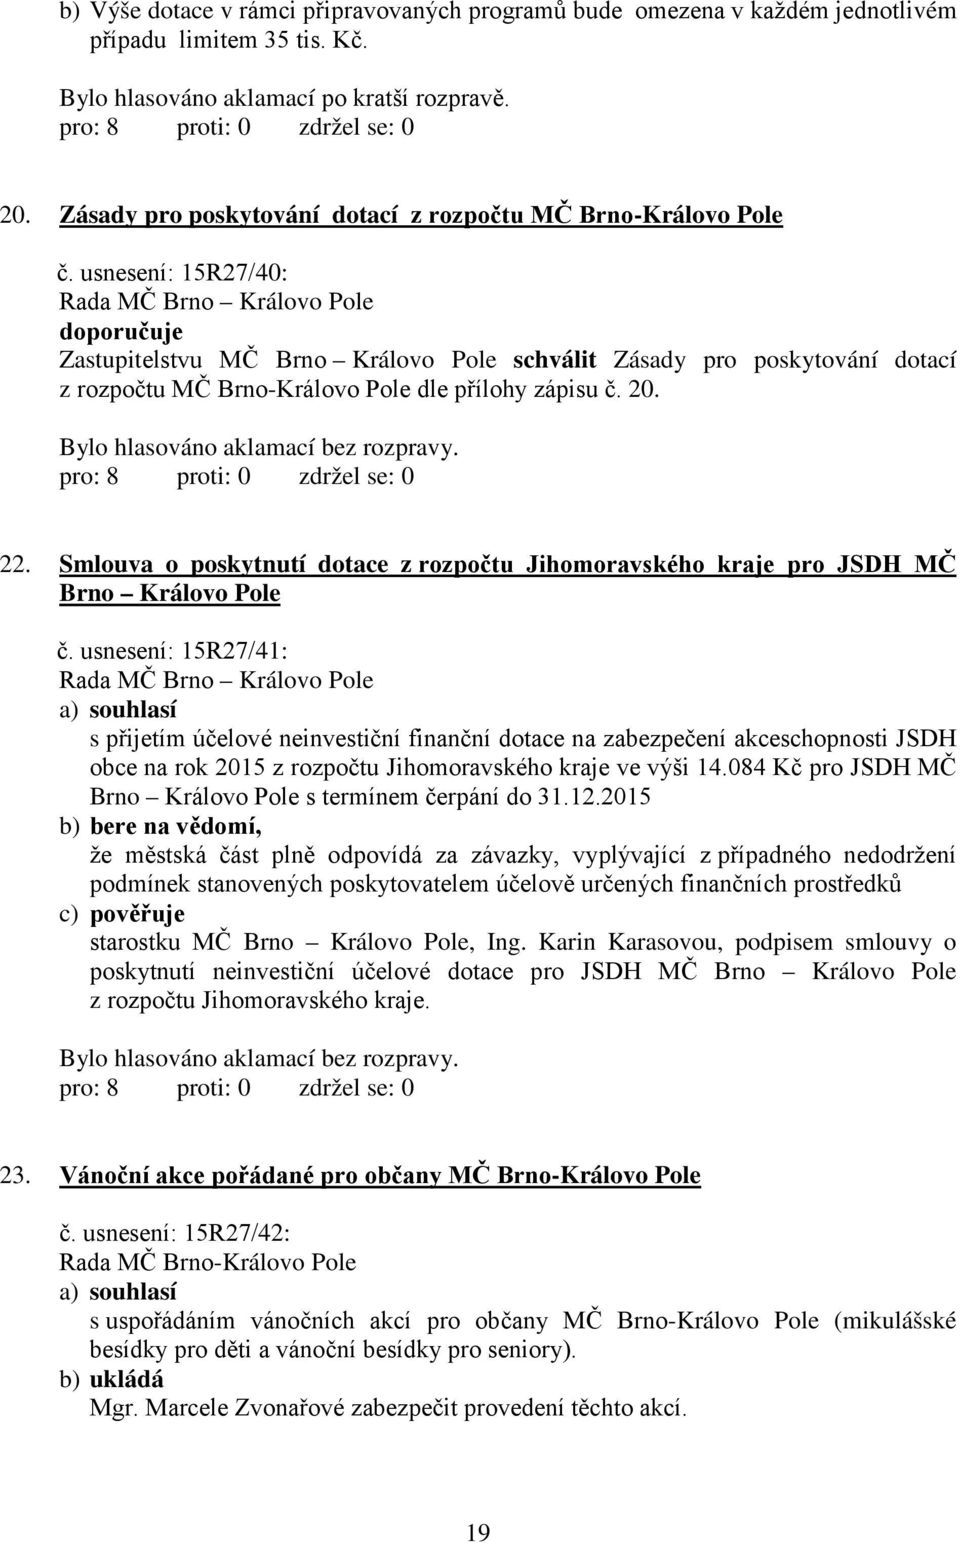 usnesení: 15R27/40: doporučuje Zastupitelstvu MČ Brno Královo Pole schválit Zásady pro poskytování dotací z rozpočtu MČ Brno-Královo Pole dle přílohy zápisu č. 20. 22.